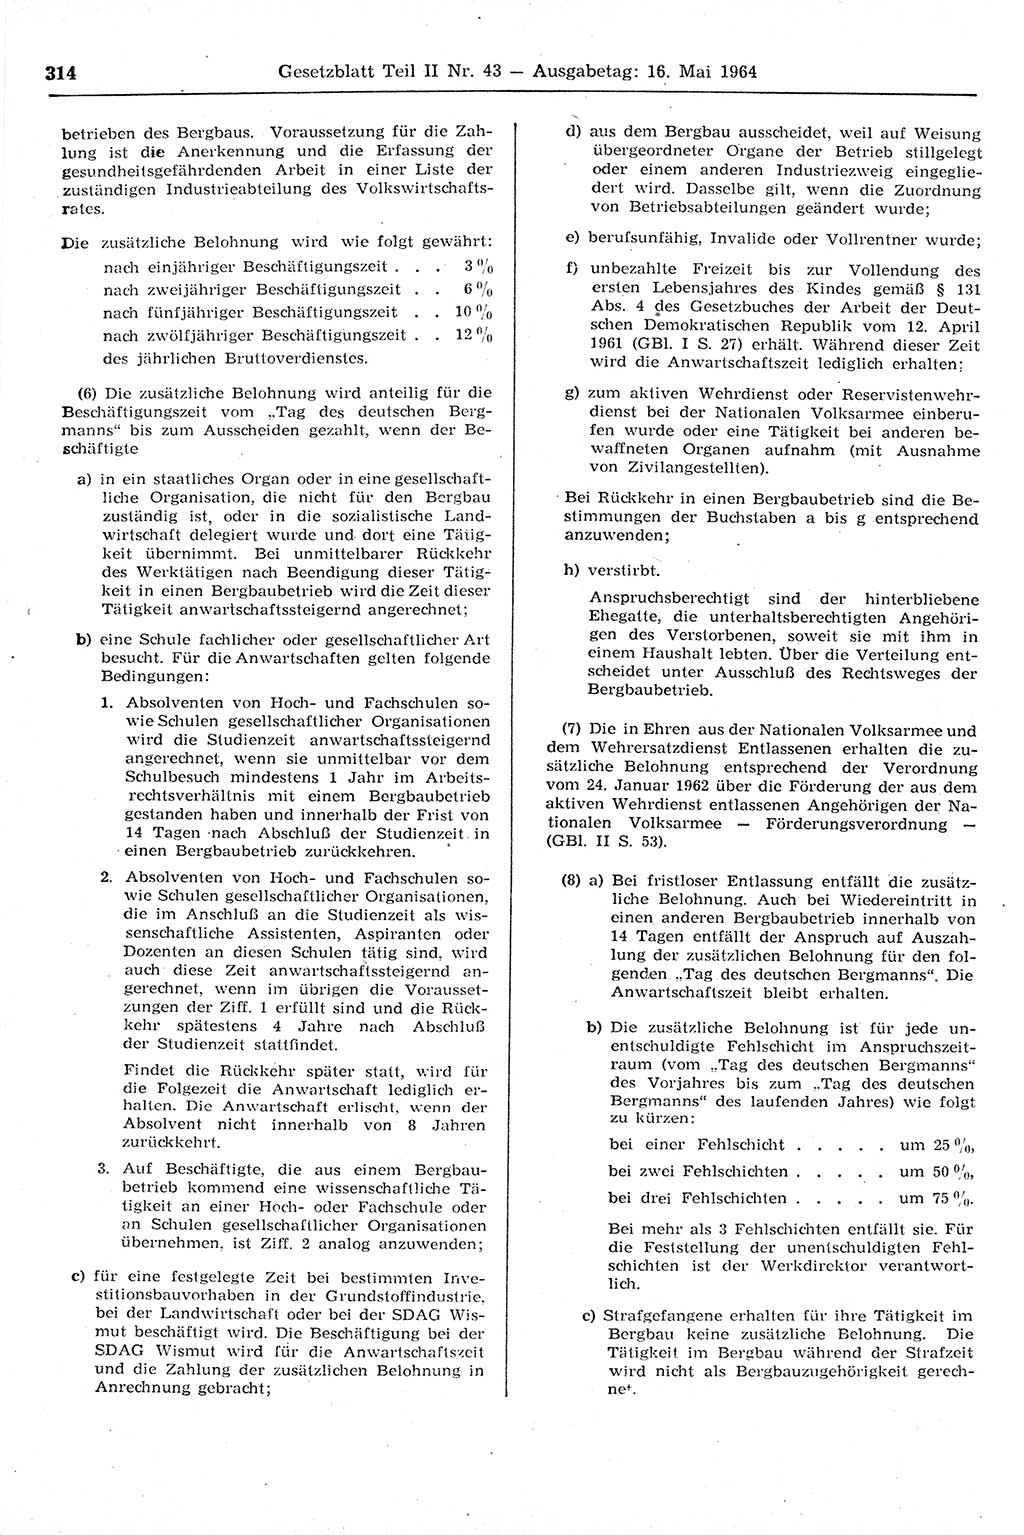 Gesetzblatt (GBl.) der Deutschen Demokratischen Republik (DDR) Teil ⅠⅠ 1964, Seite 314 (GBl. DDR ⅠⅠ 1964, S. 314)